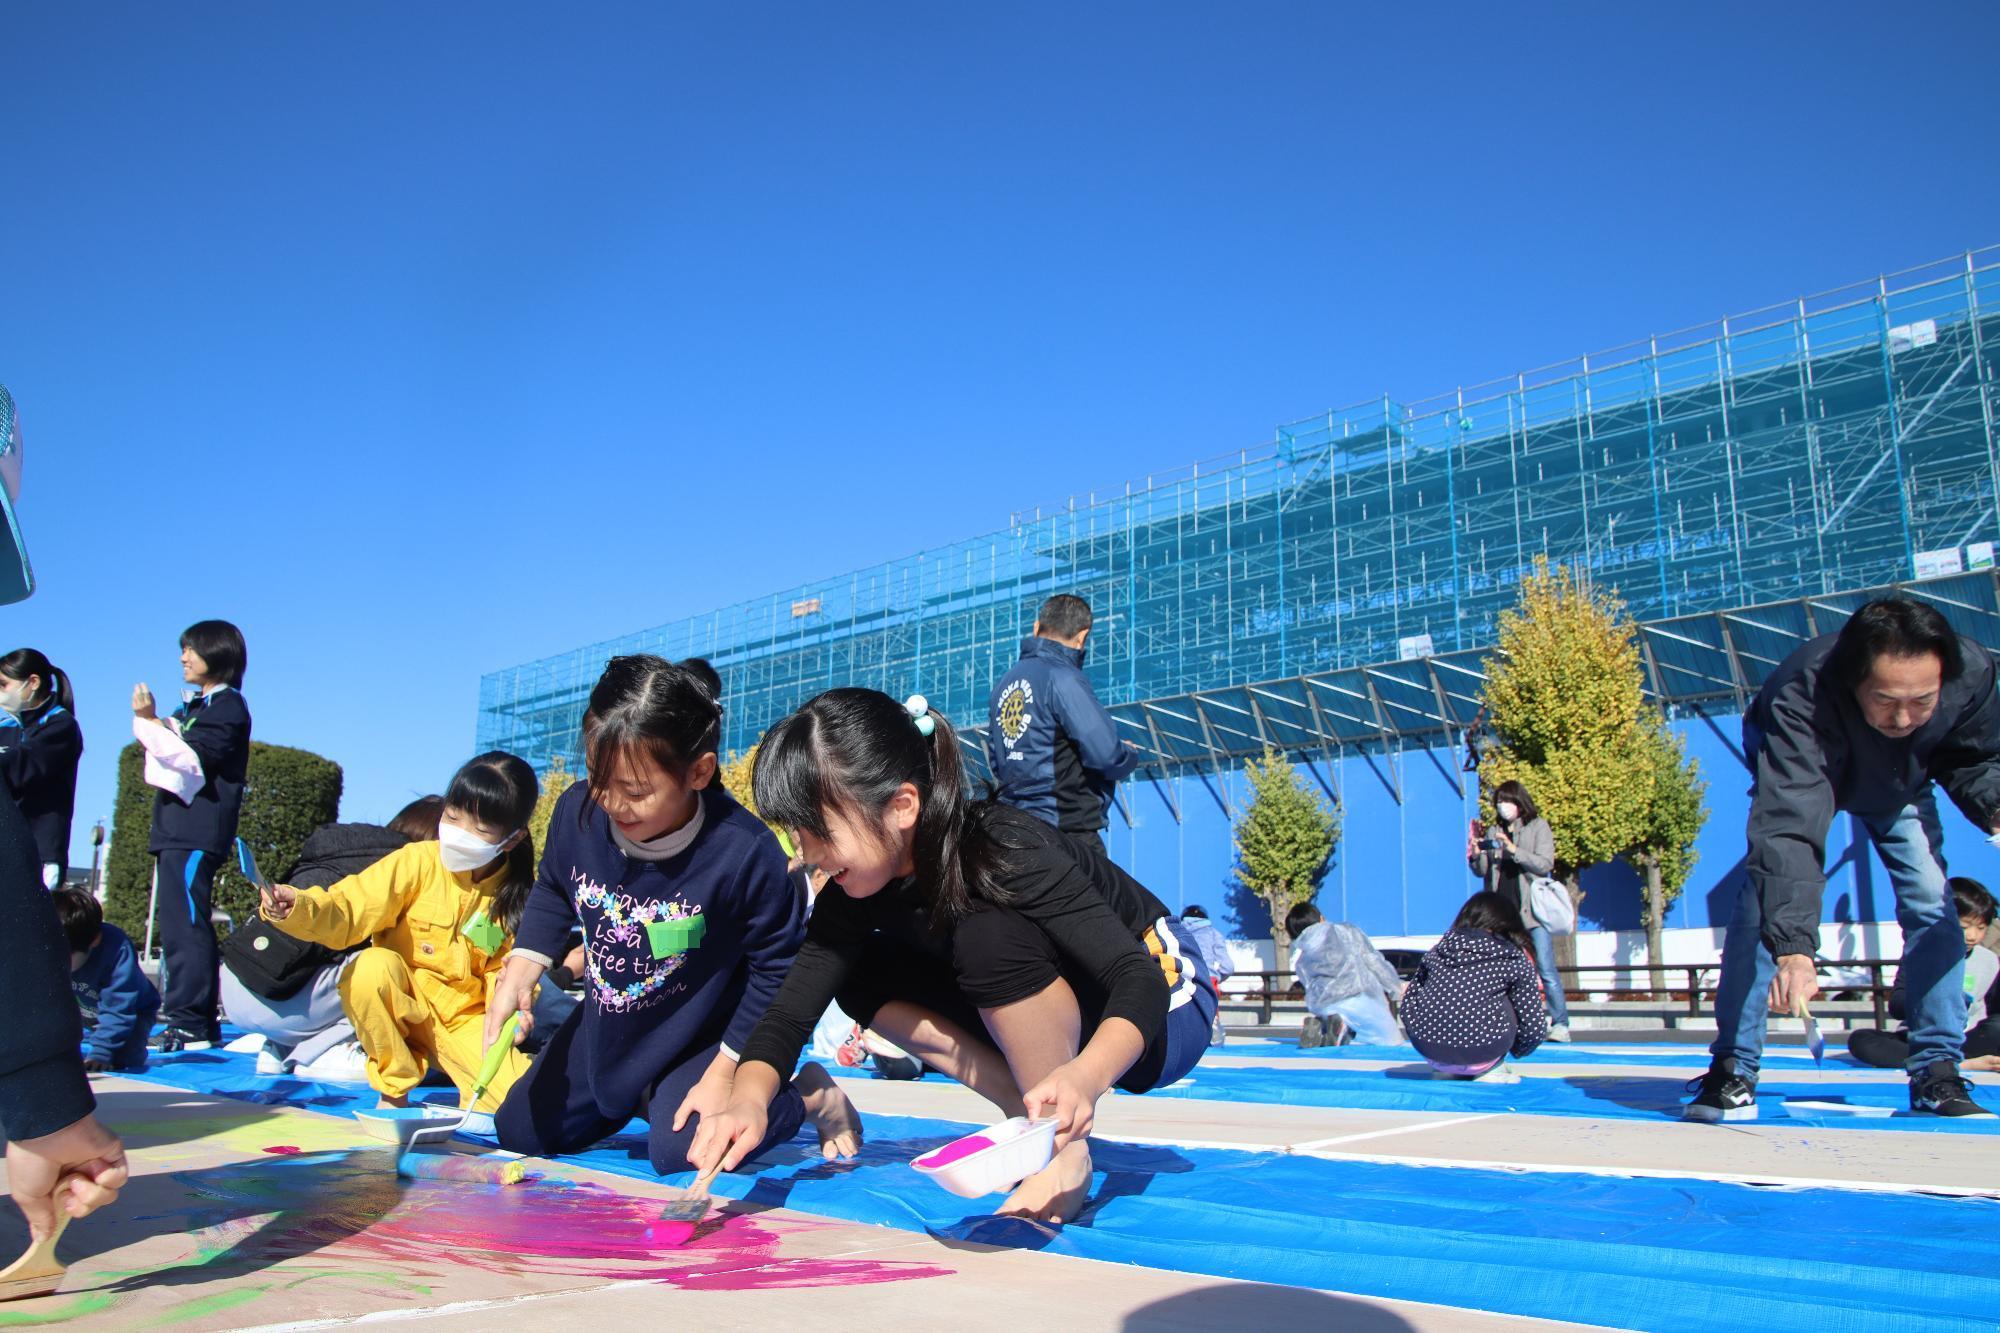 建設中の複合交流拠点の前で大きなベニヤ板のキャンバスに絵を描く子供たち